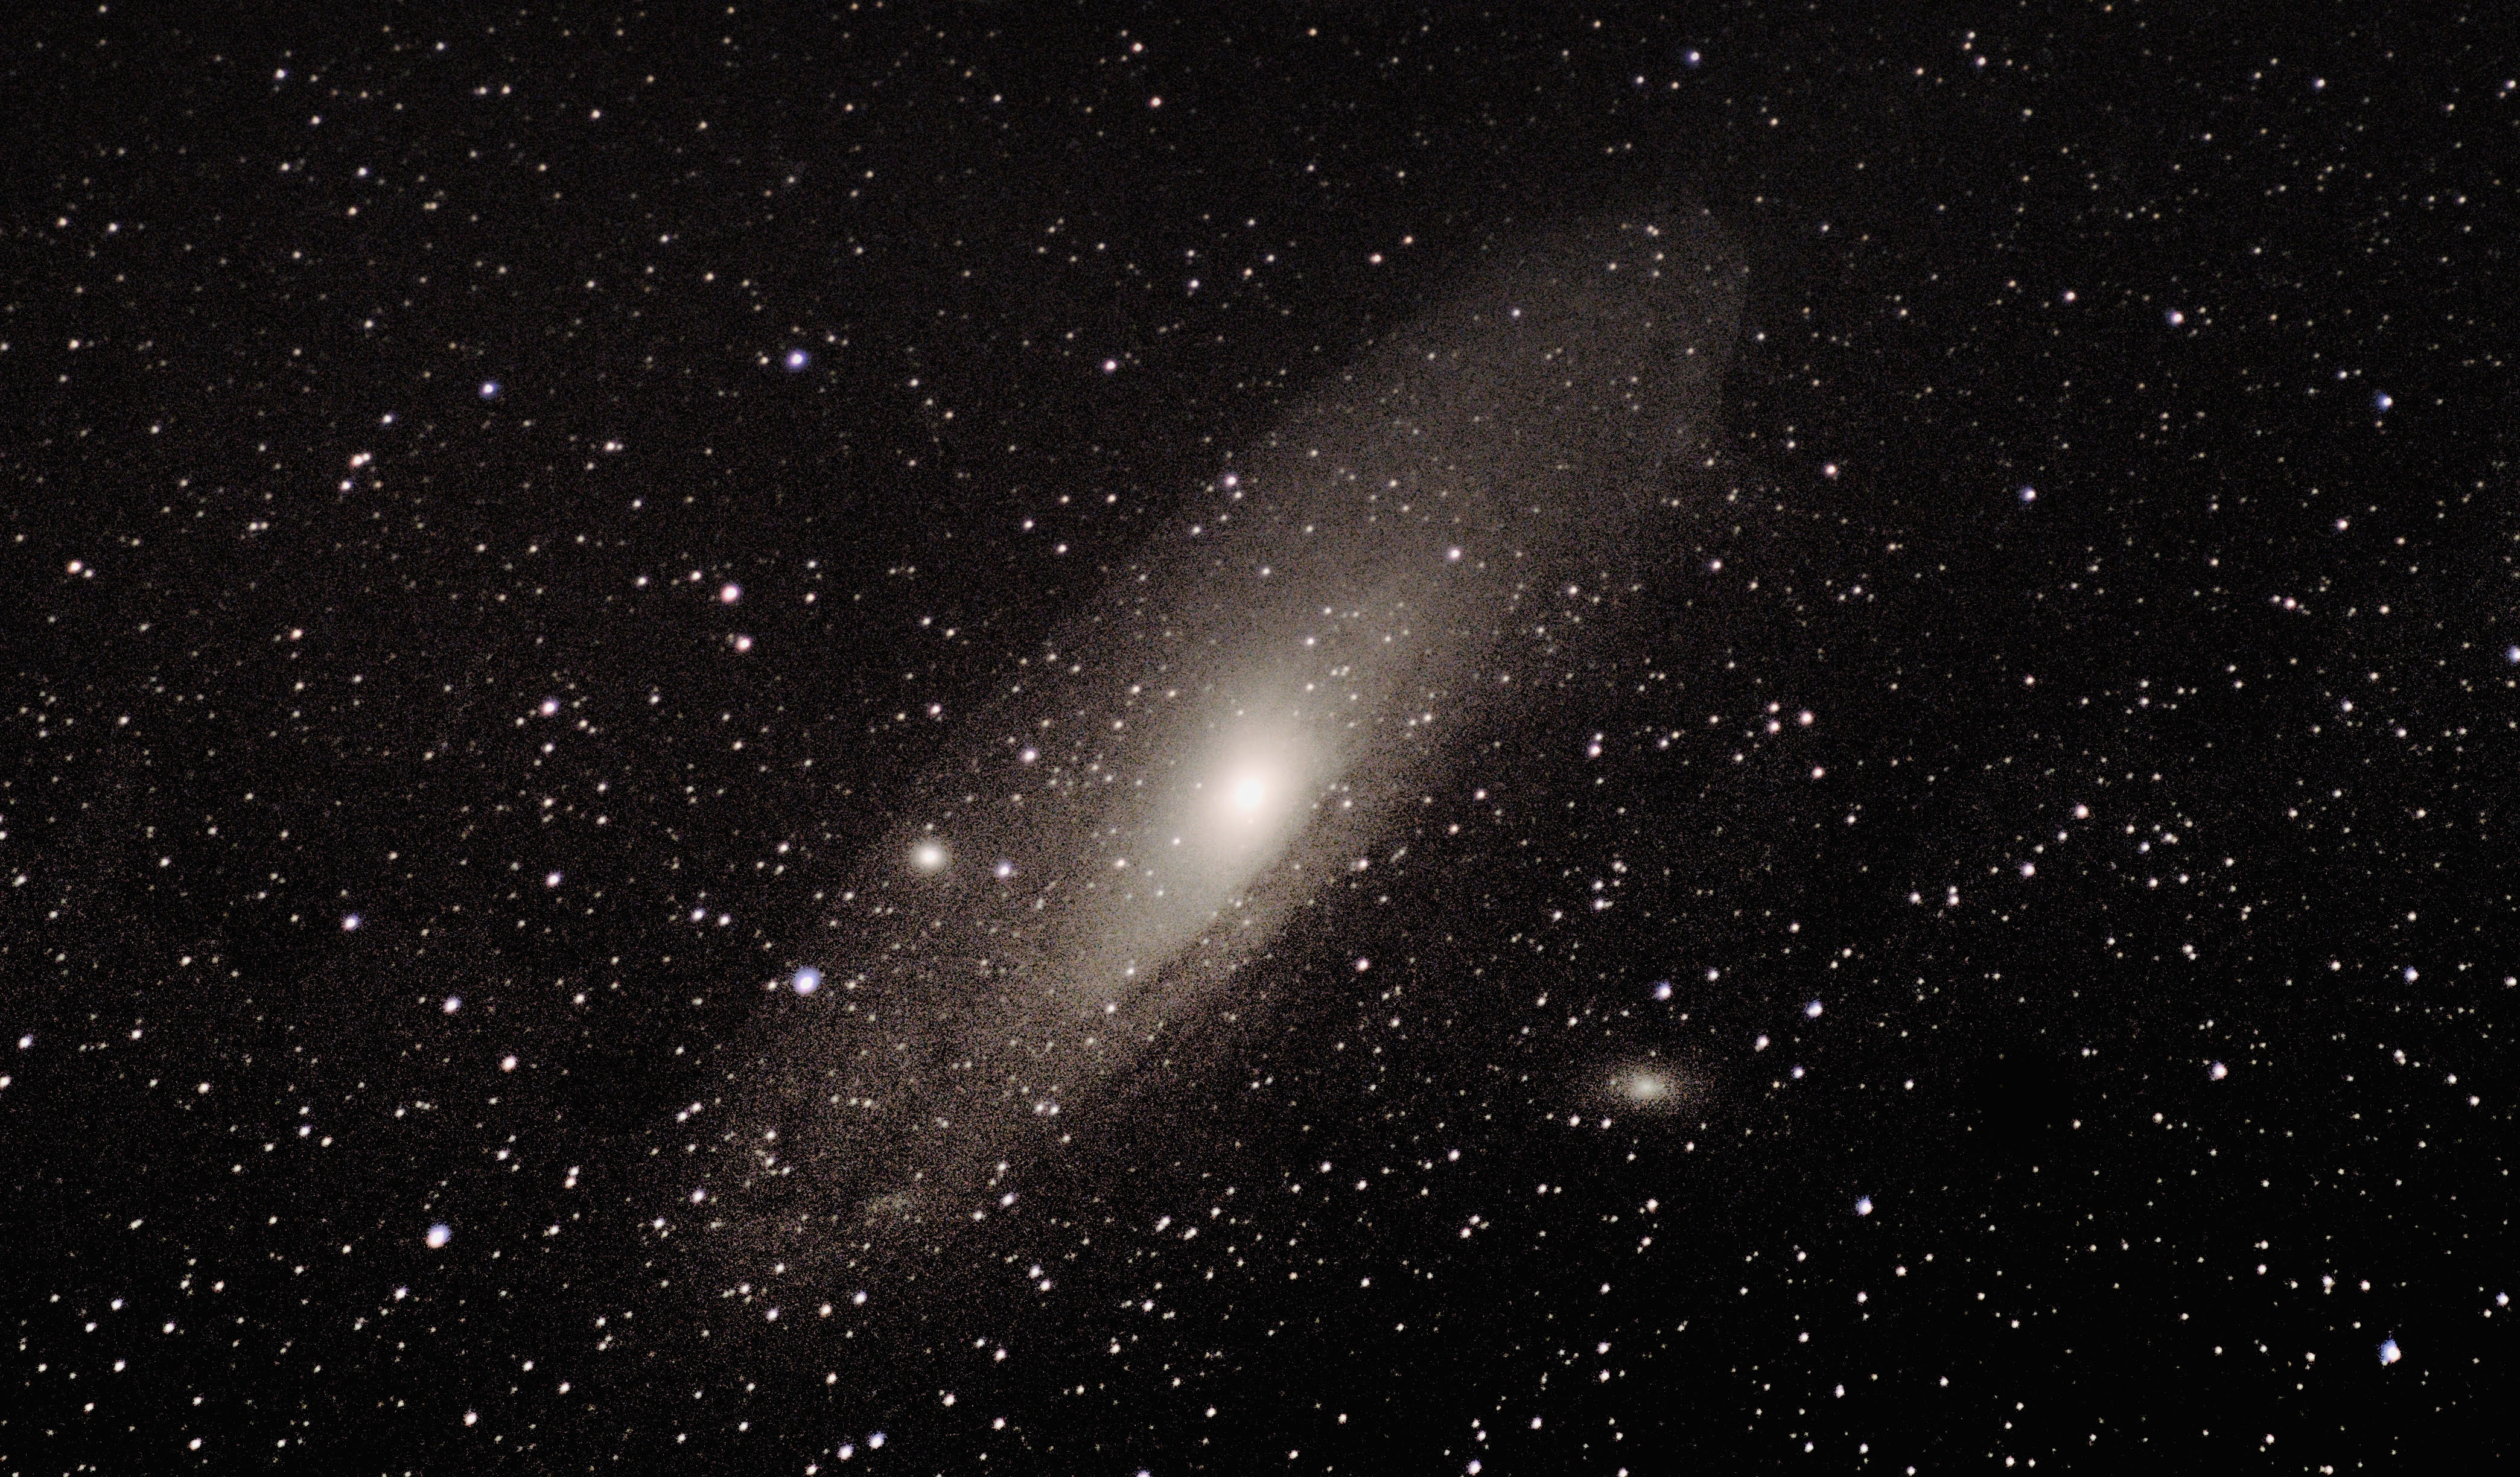 Andromeda Galaxy with the Nyx Tracker